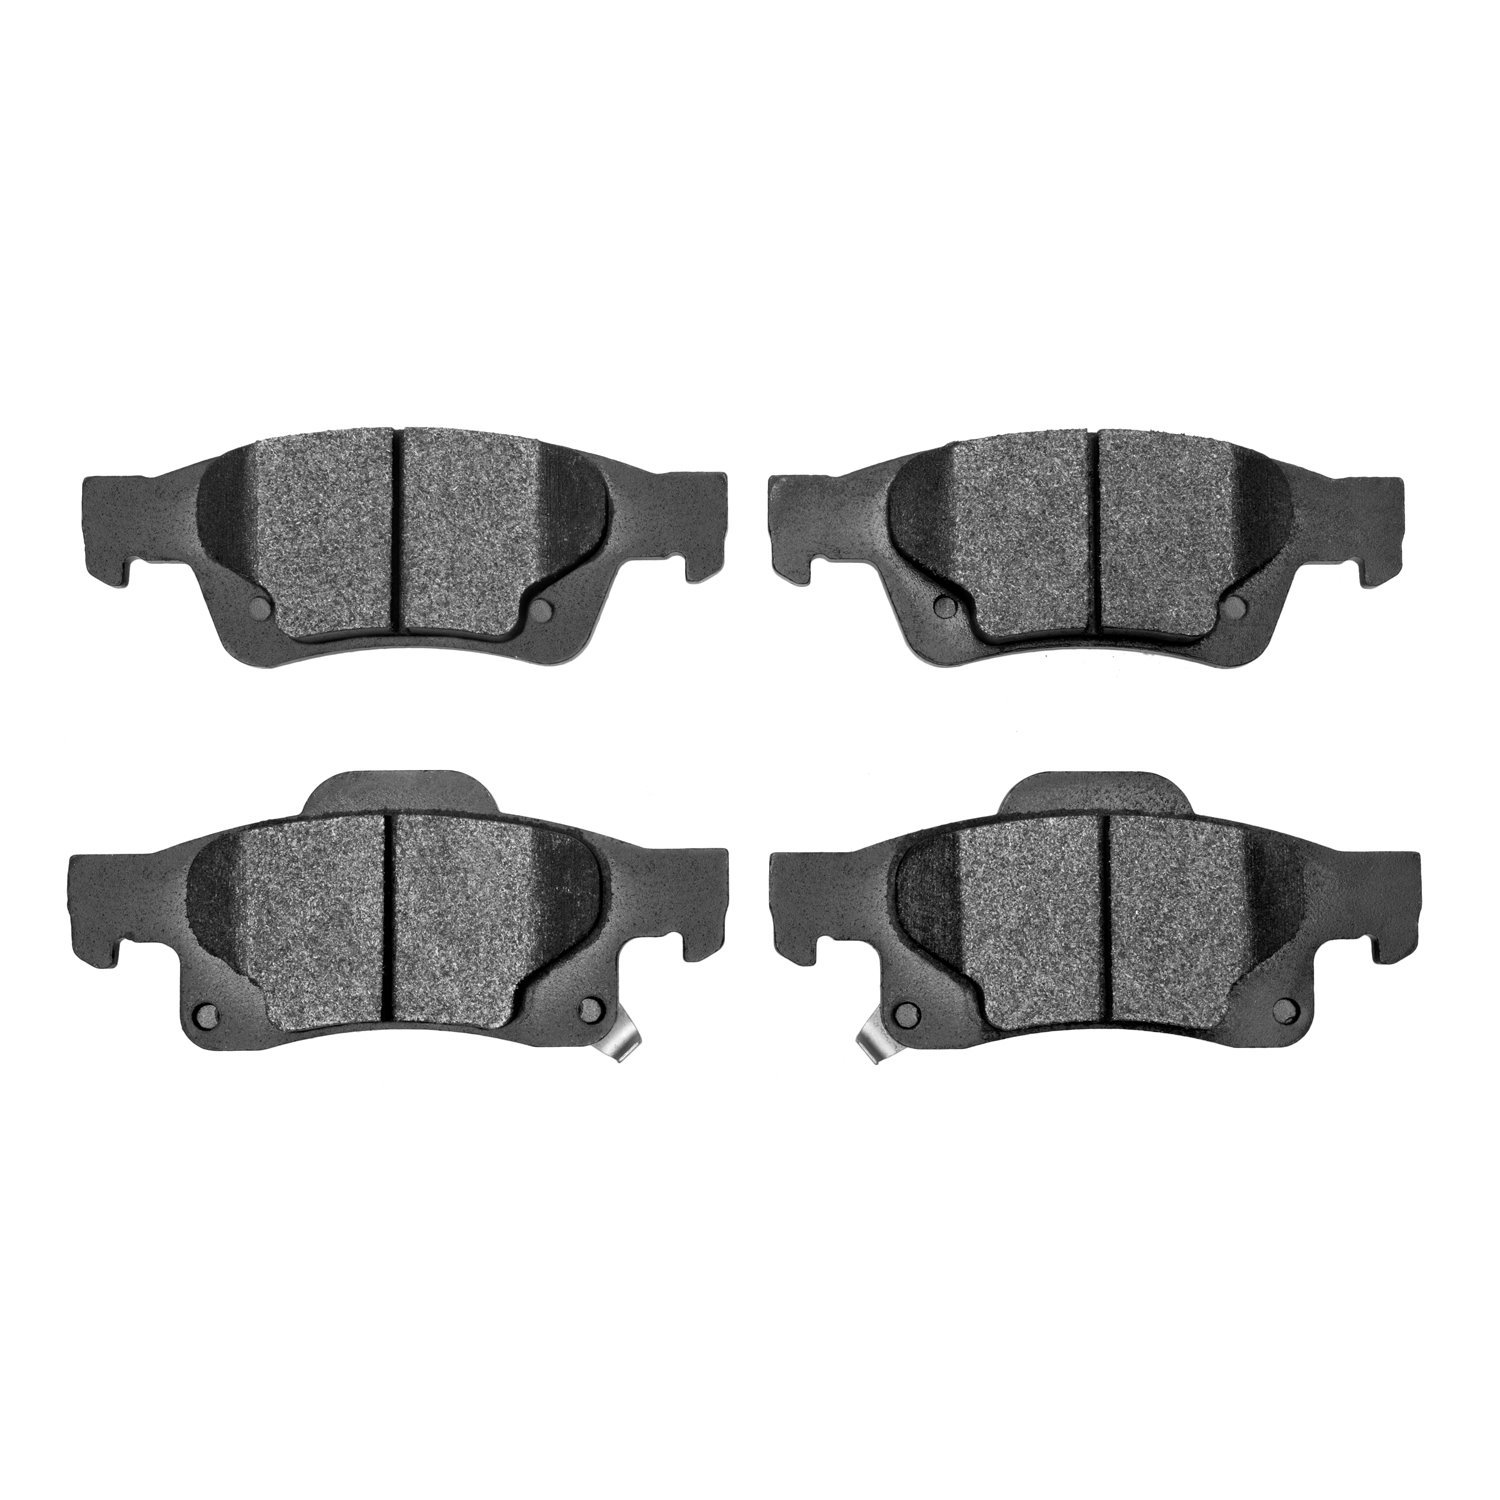 1214-1498-00 Heavy-Duty Semi-Metallic Brake Pads, Fits Select Mopar, Position: Rear